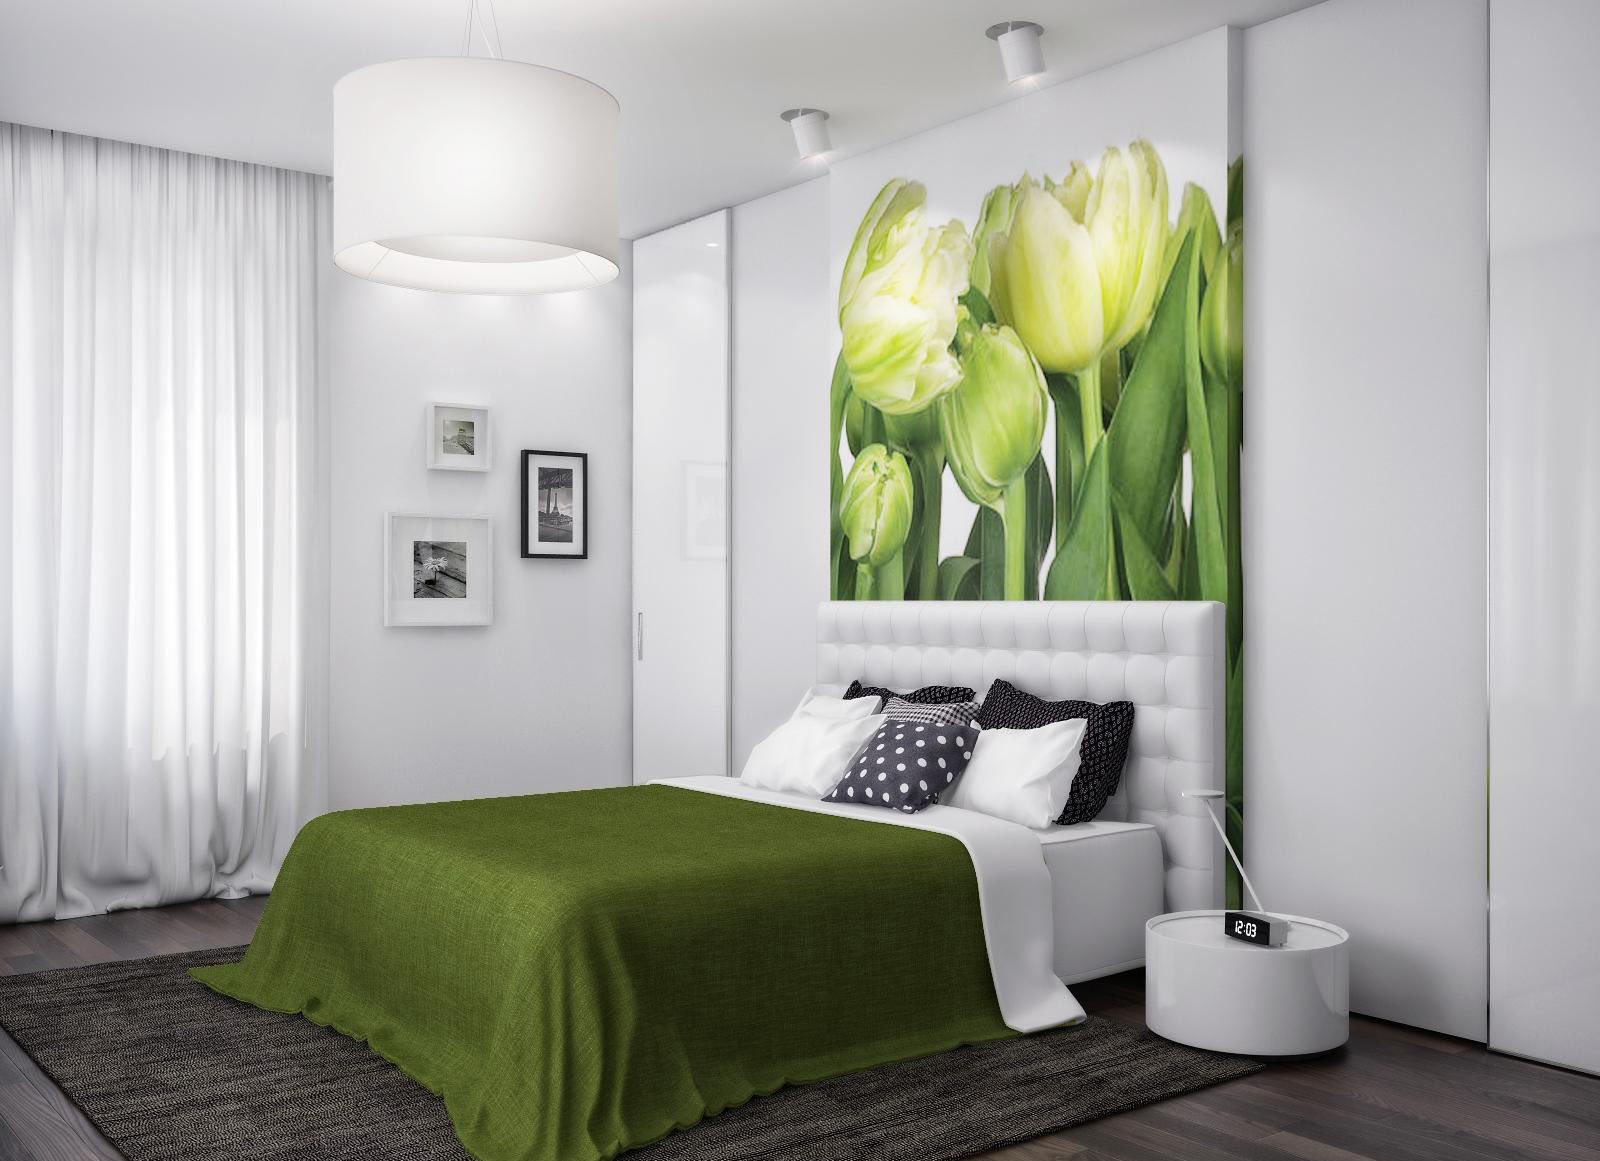 Фотообои "тюльпаны" над кроватью в интерьере спальни